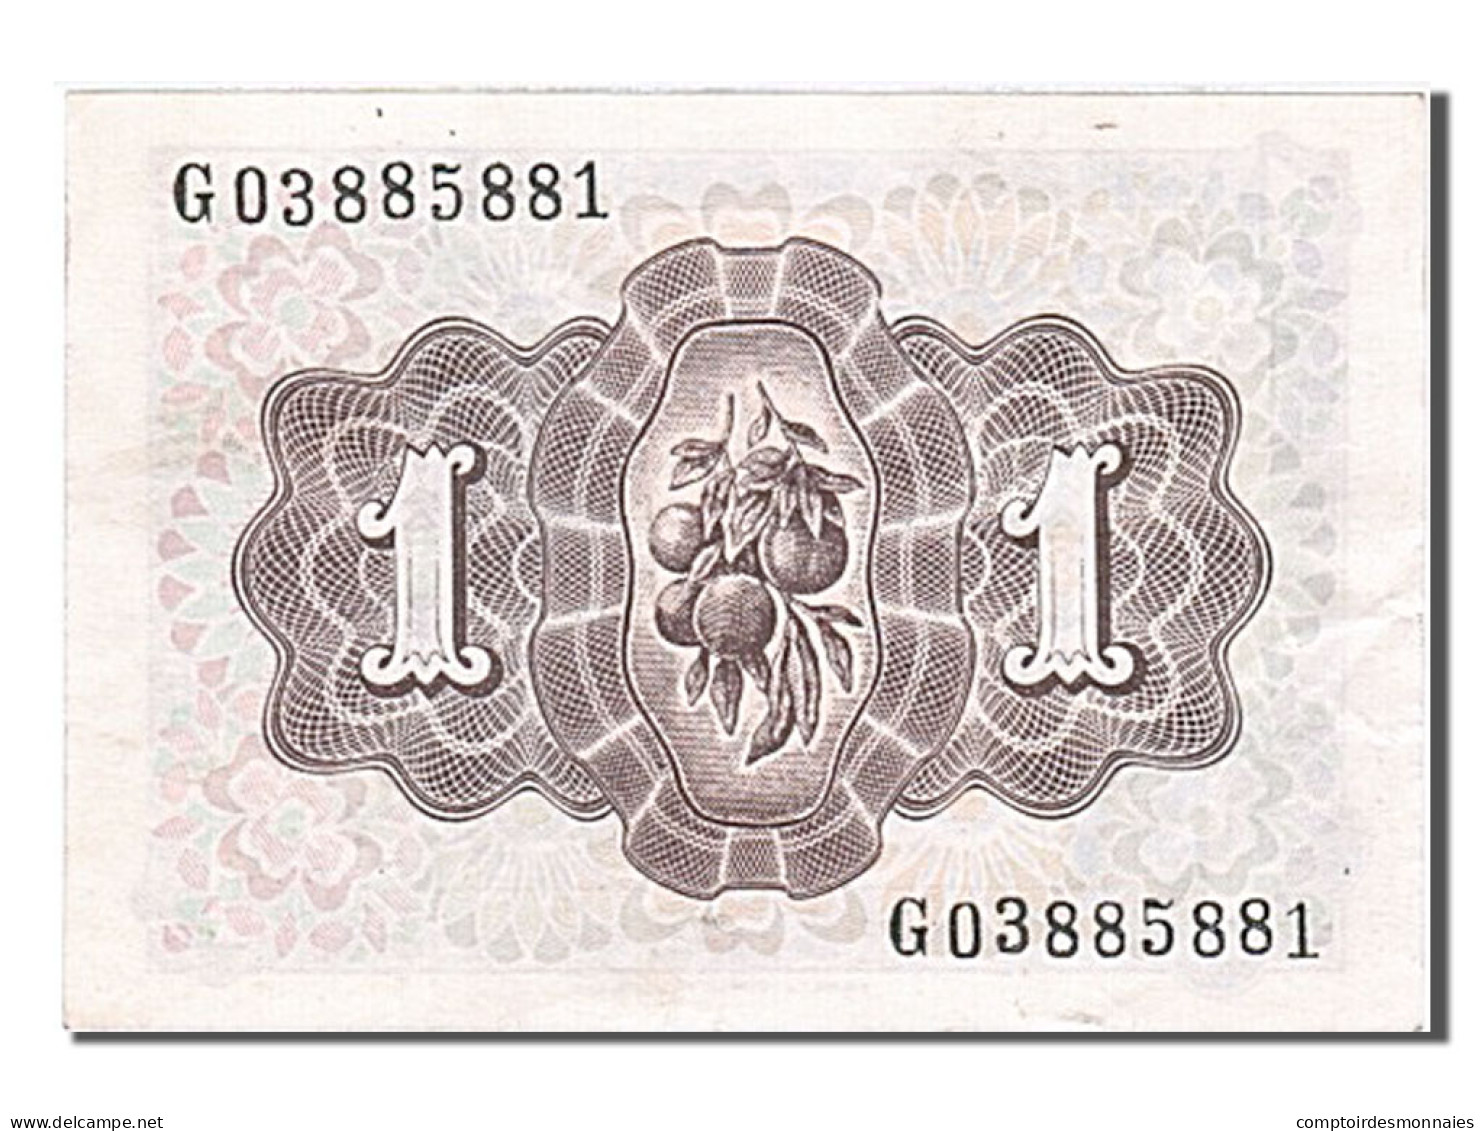 Billet, Espagne, 1 Peseta, 1948, 1948-06-16, SUP+ - 1-2 Peseten